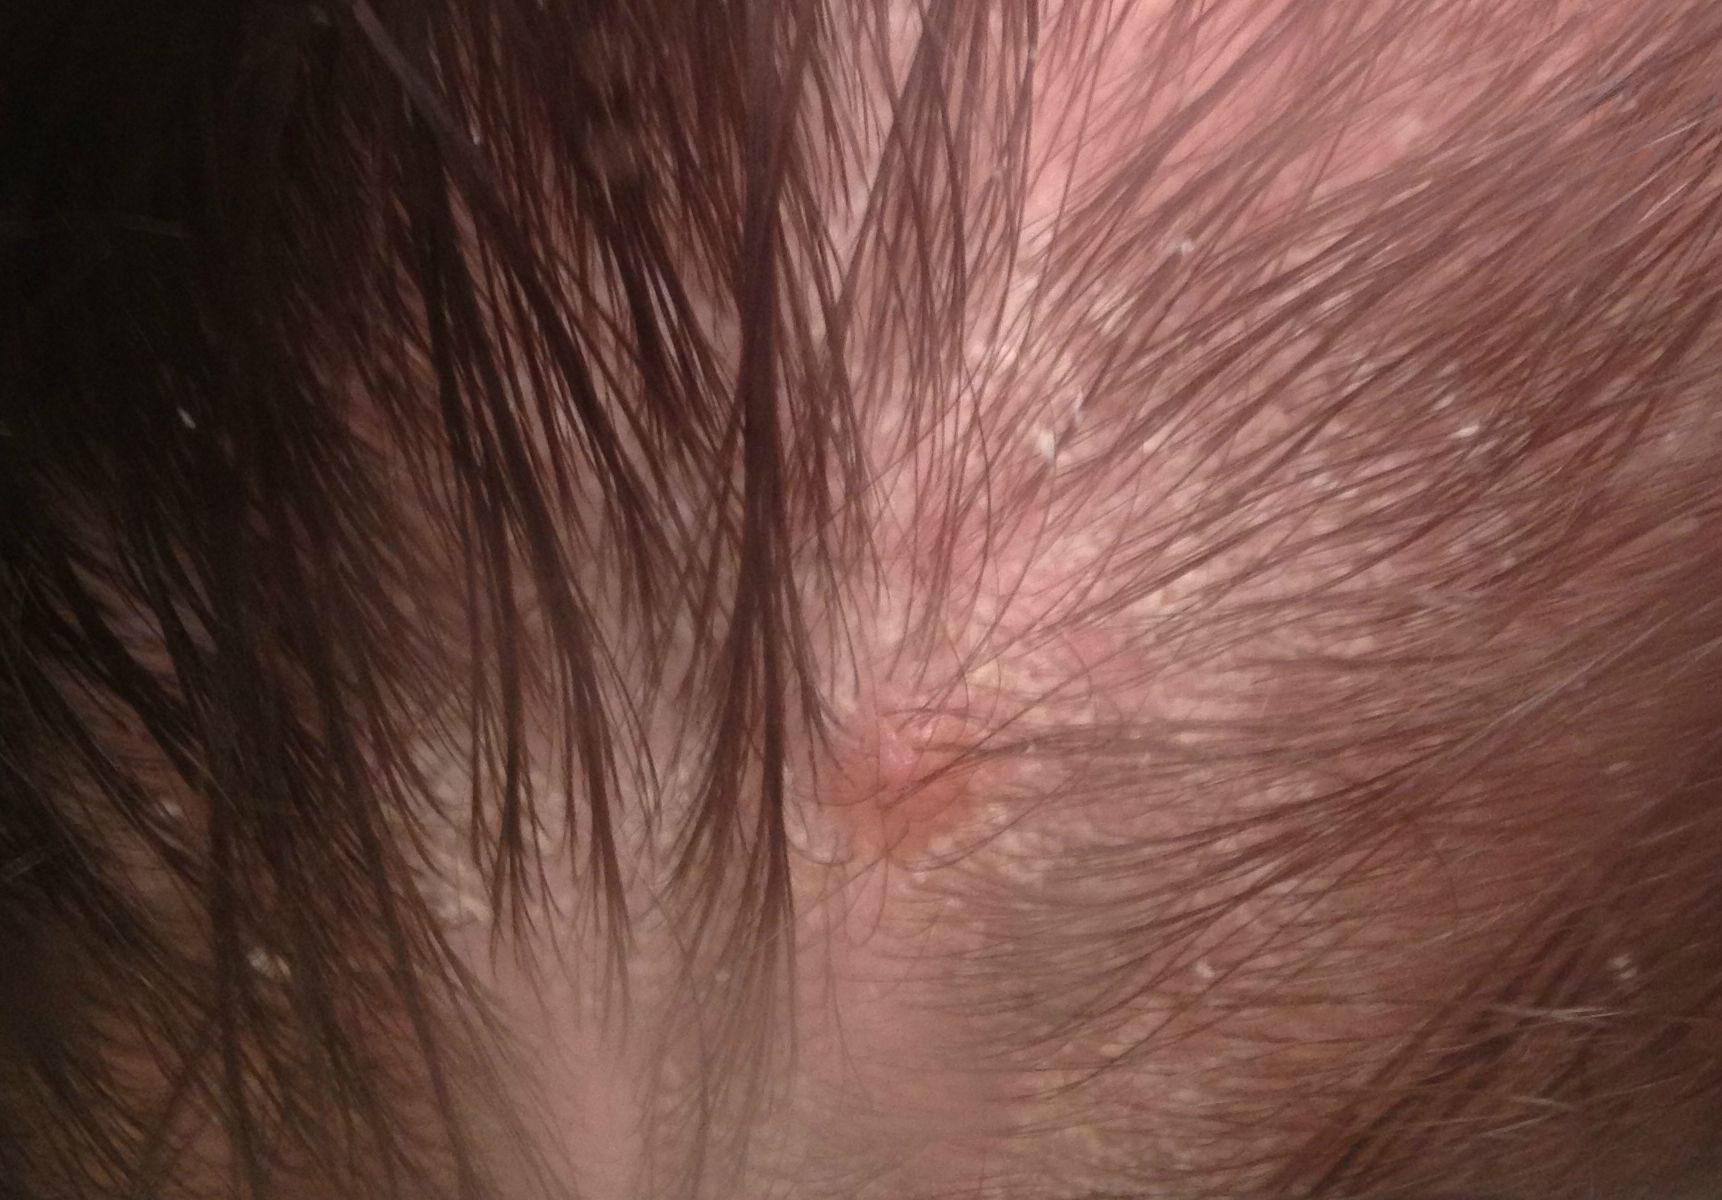 Seborrheic Dermatitis Scalp Dandruff treatment for men and women,cost in mumbai, india